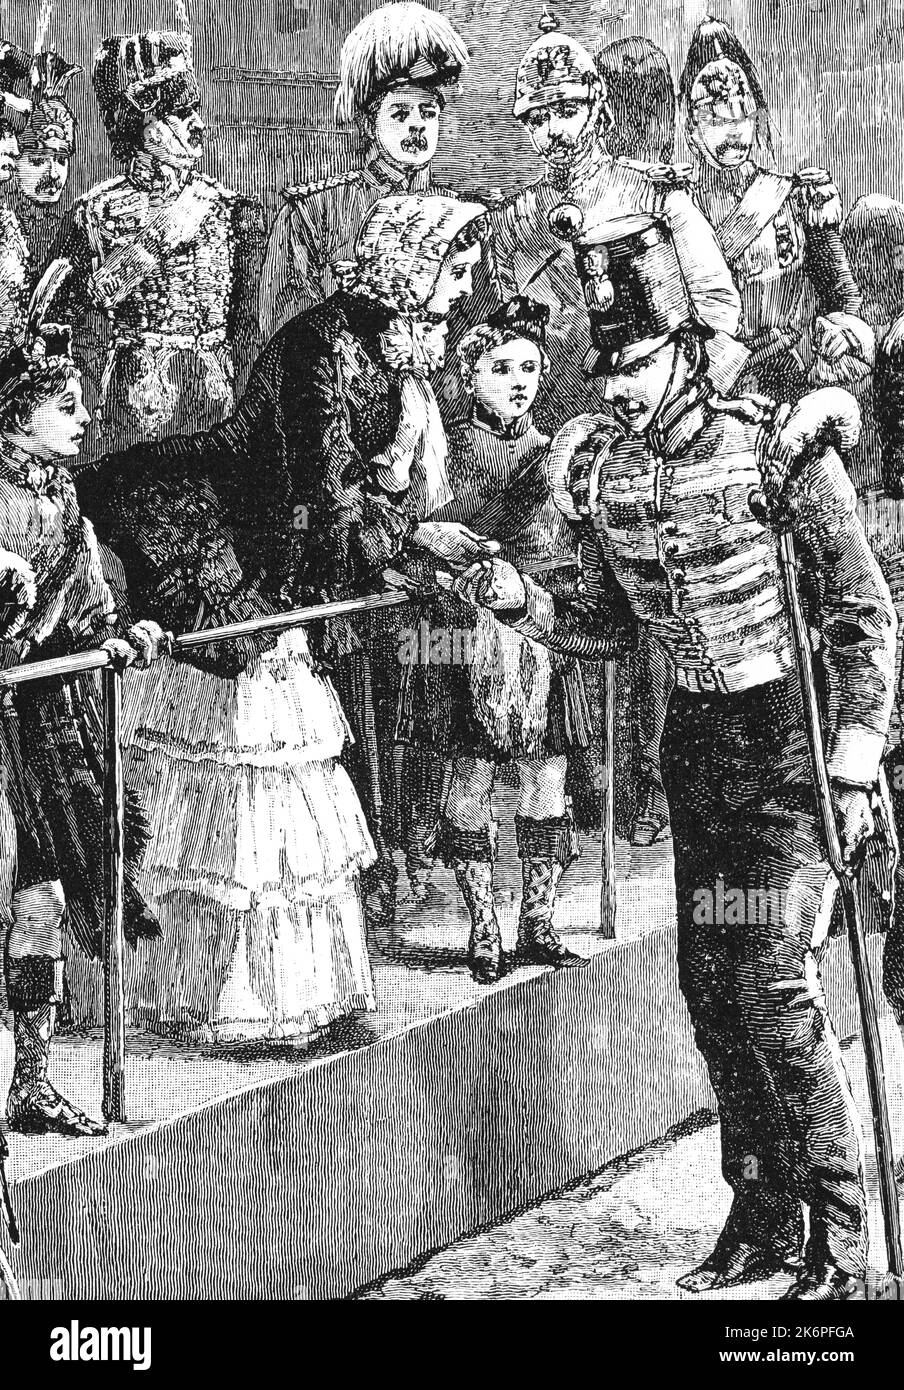 Queen Victoria (1819-1901), distribuant la Médaille de la Crimée, Horse Guards Parade, Londres, c1854. La guerre de Crimée a été menée d'octobre 1853 à février 1856. La Médaille de la Crimée était une médaille de campagne approuvée le 15 décembre 1854, pour remise aux officiers et aux hommes des unités britanniques (terre et marine) qui avaient combattu dans la guerre de Crimée de 1854-56 contre la Russie. Banque D'Images